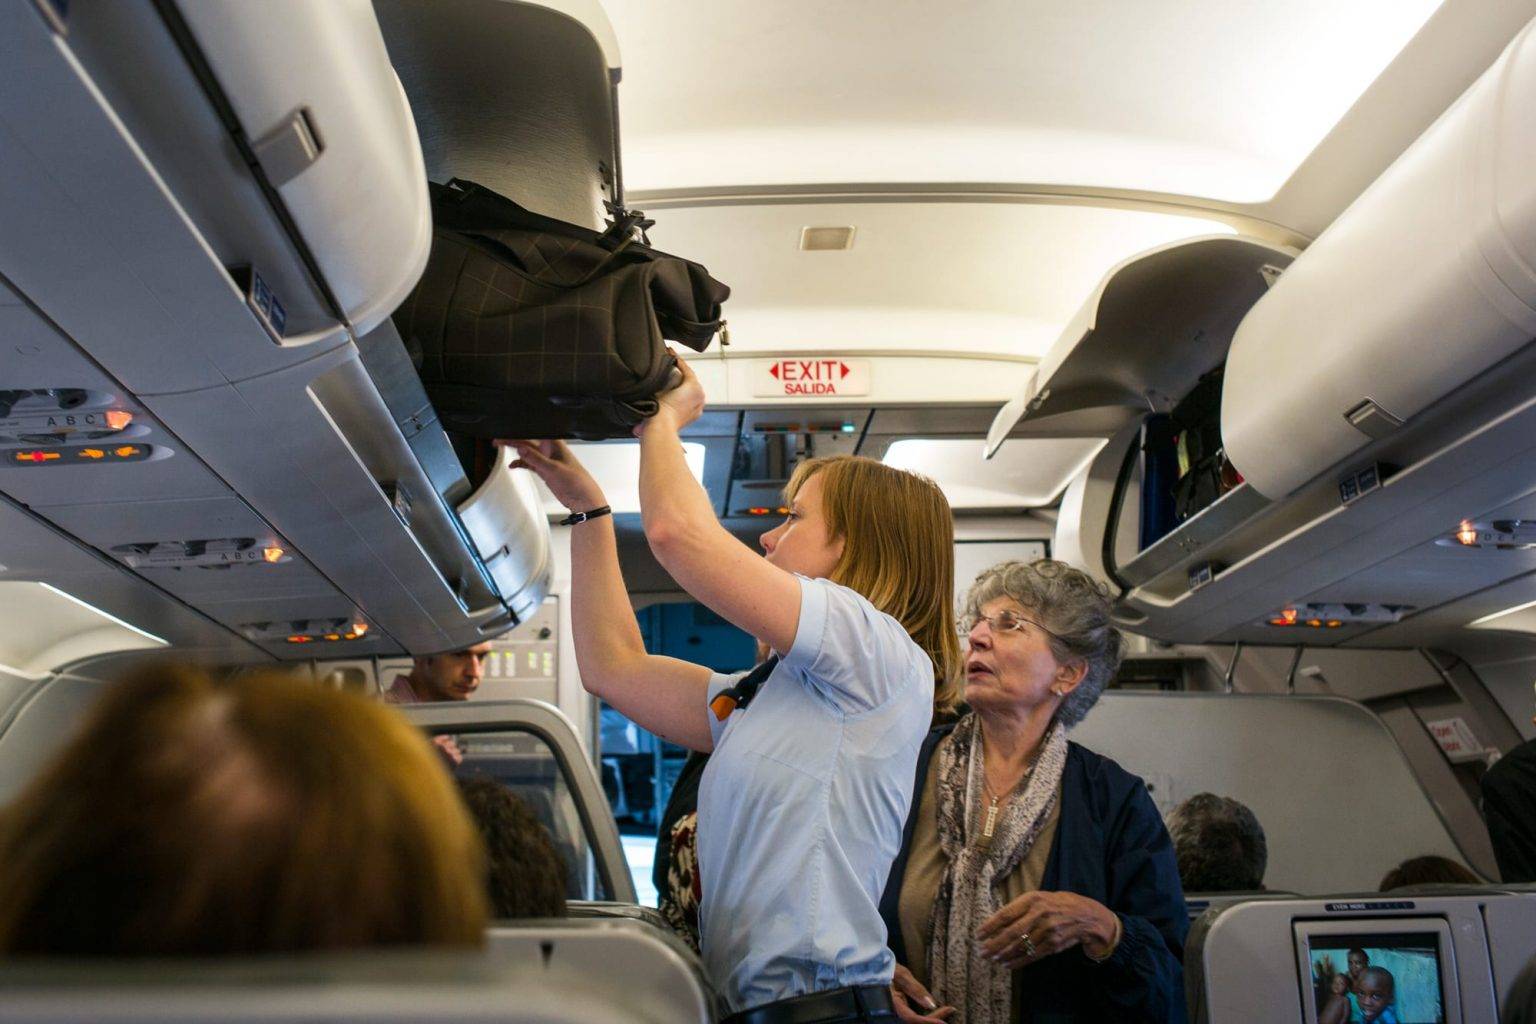 Первый раз лечу на самолете: подготовка багажа, оформление в аэропорту, советы о поведении на борту, отзывы туристов